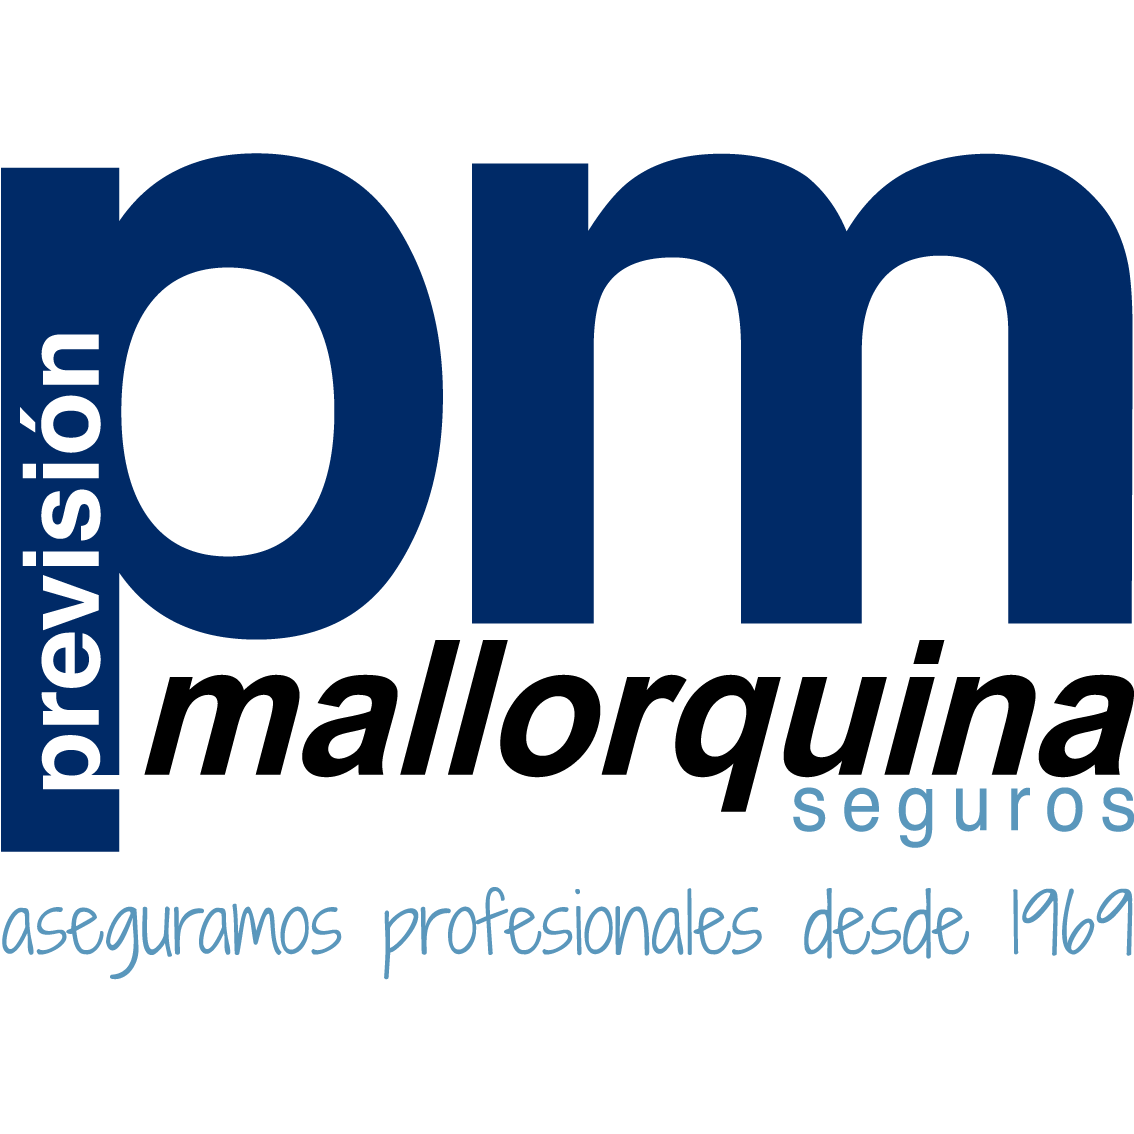 La Previsión Mallorquina de Seguros, S.A. Logo